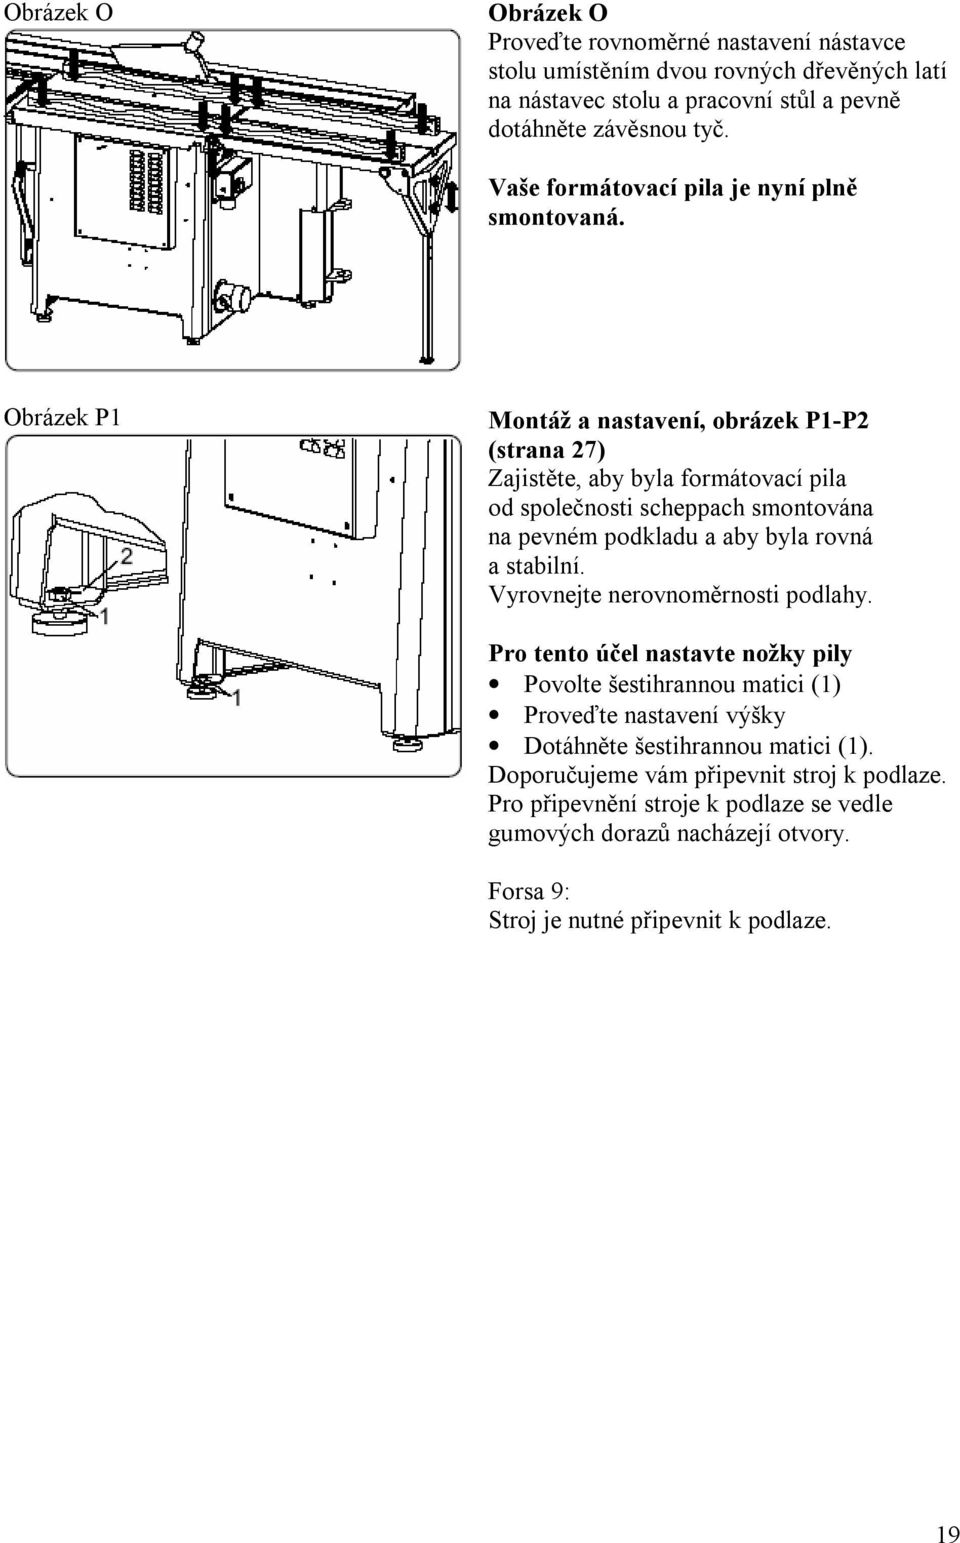 Obrázek P1 Montáž a nastavení, obrázek P1-P2 (strana 27) Zajistěte, aby byla formátovací pila od společnosti scheppach smontována na pevném podkladu a aby byla rovná a stabilní.